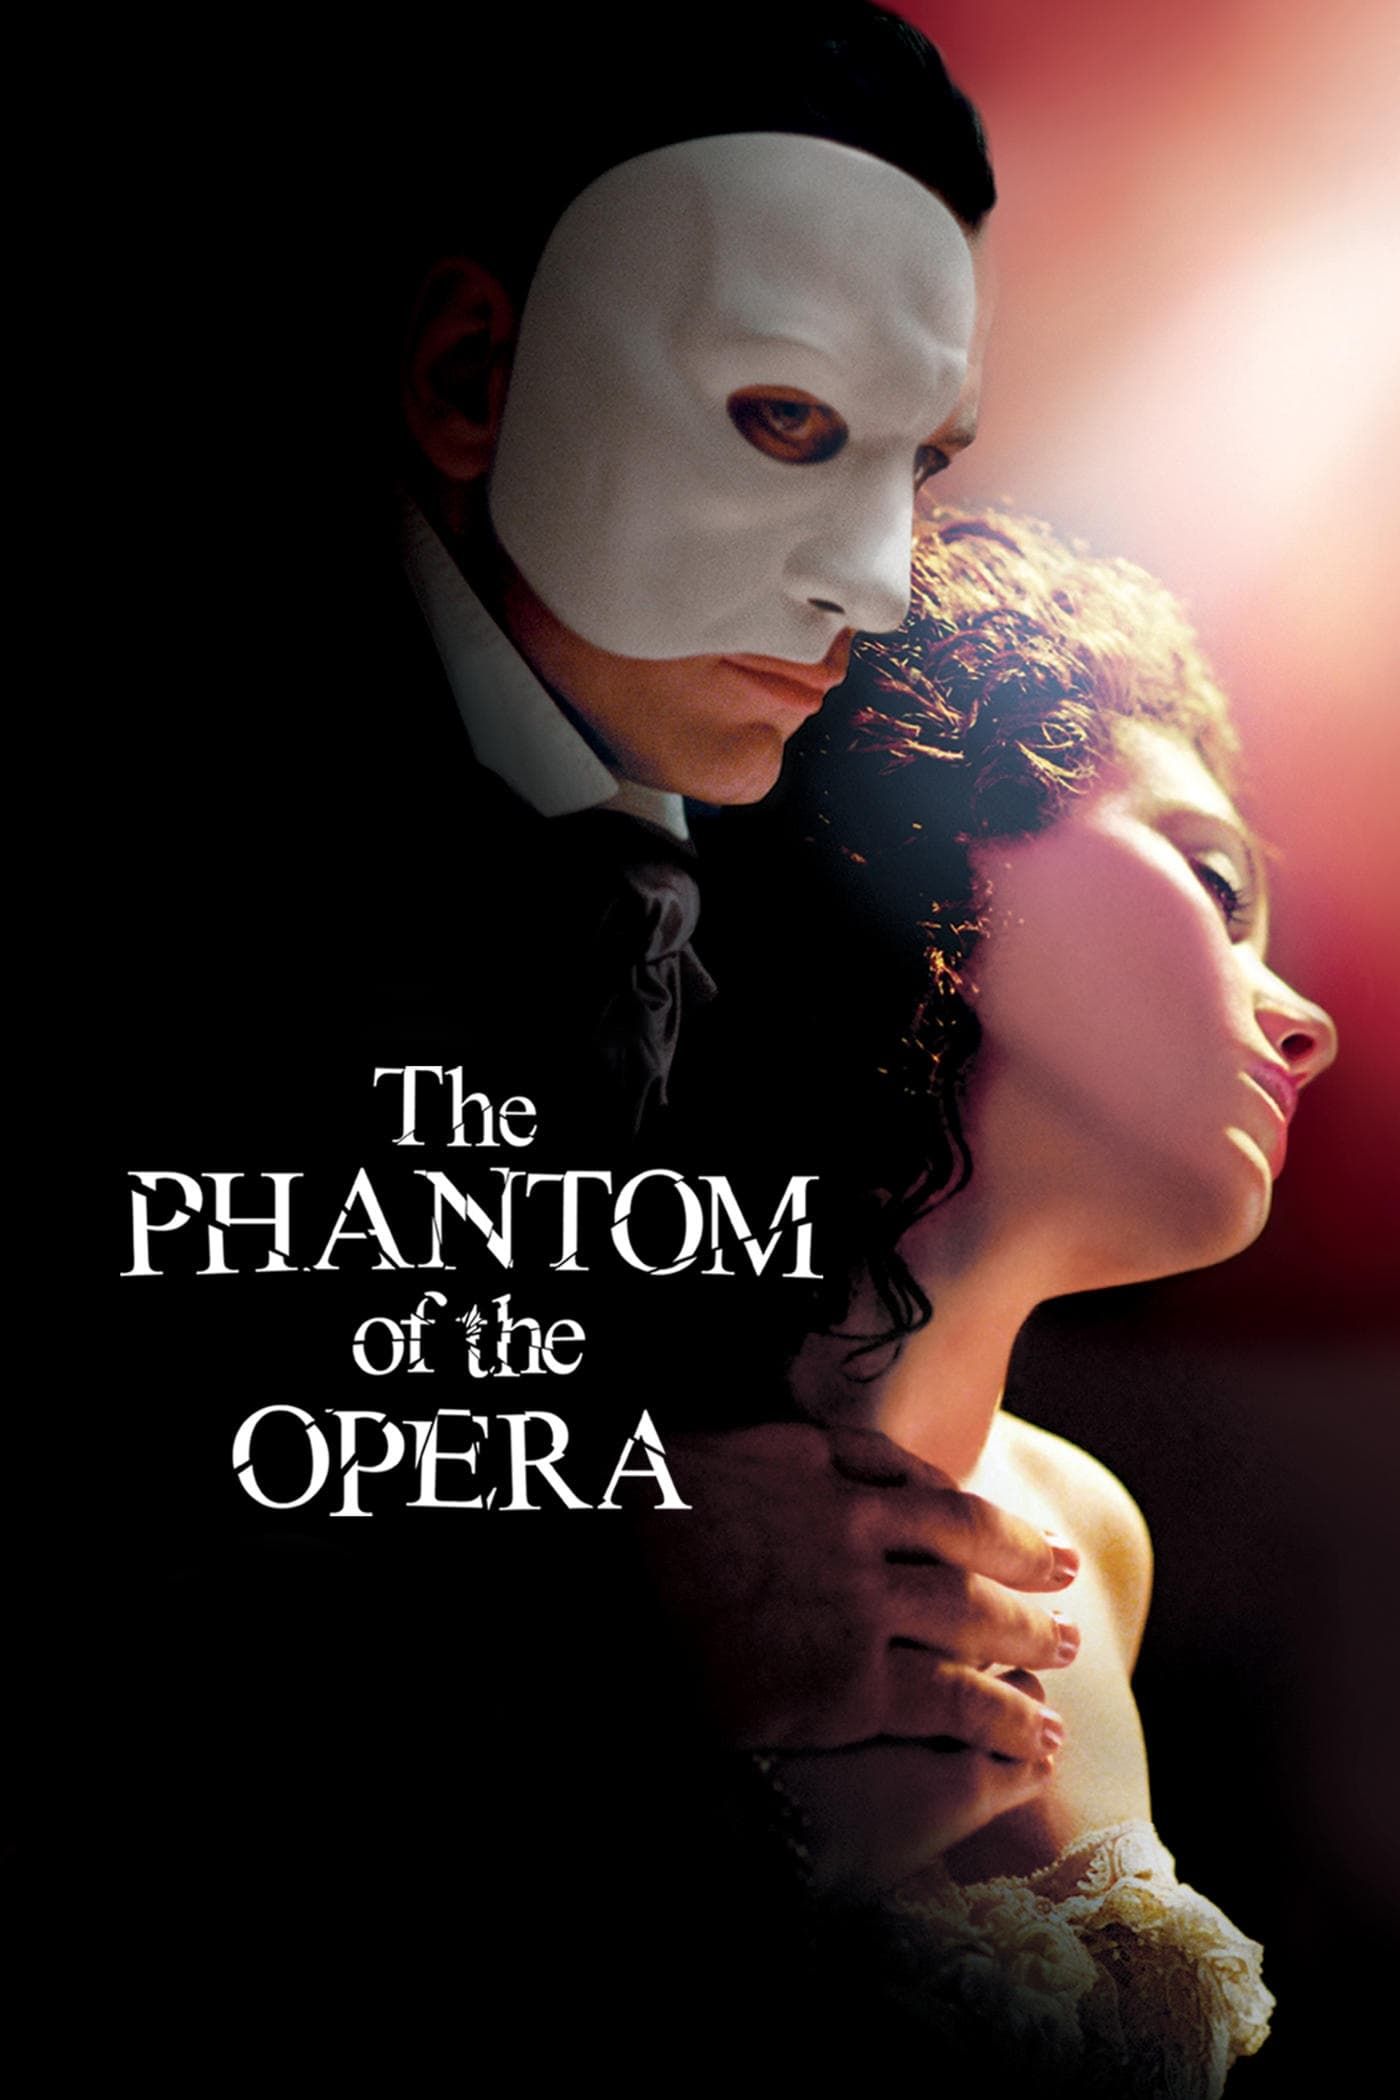 Andrew Lloyd Webber's the Phantom of the Opera